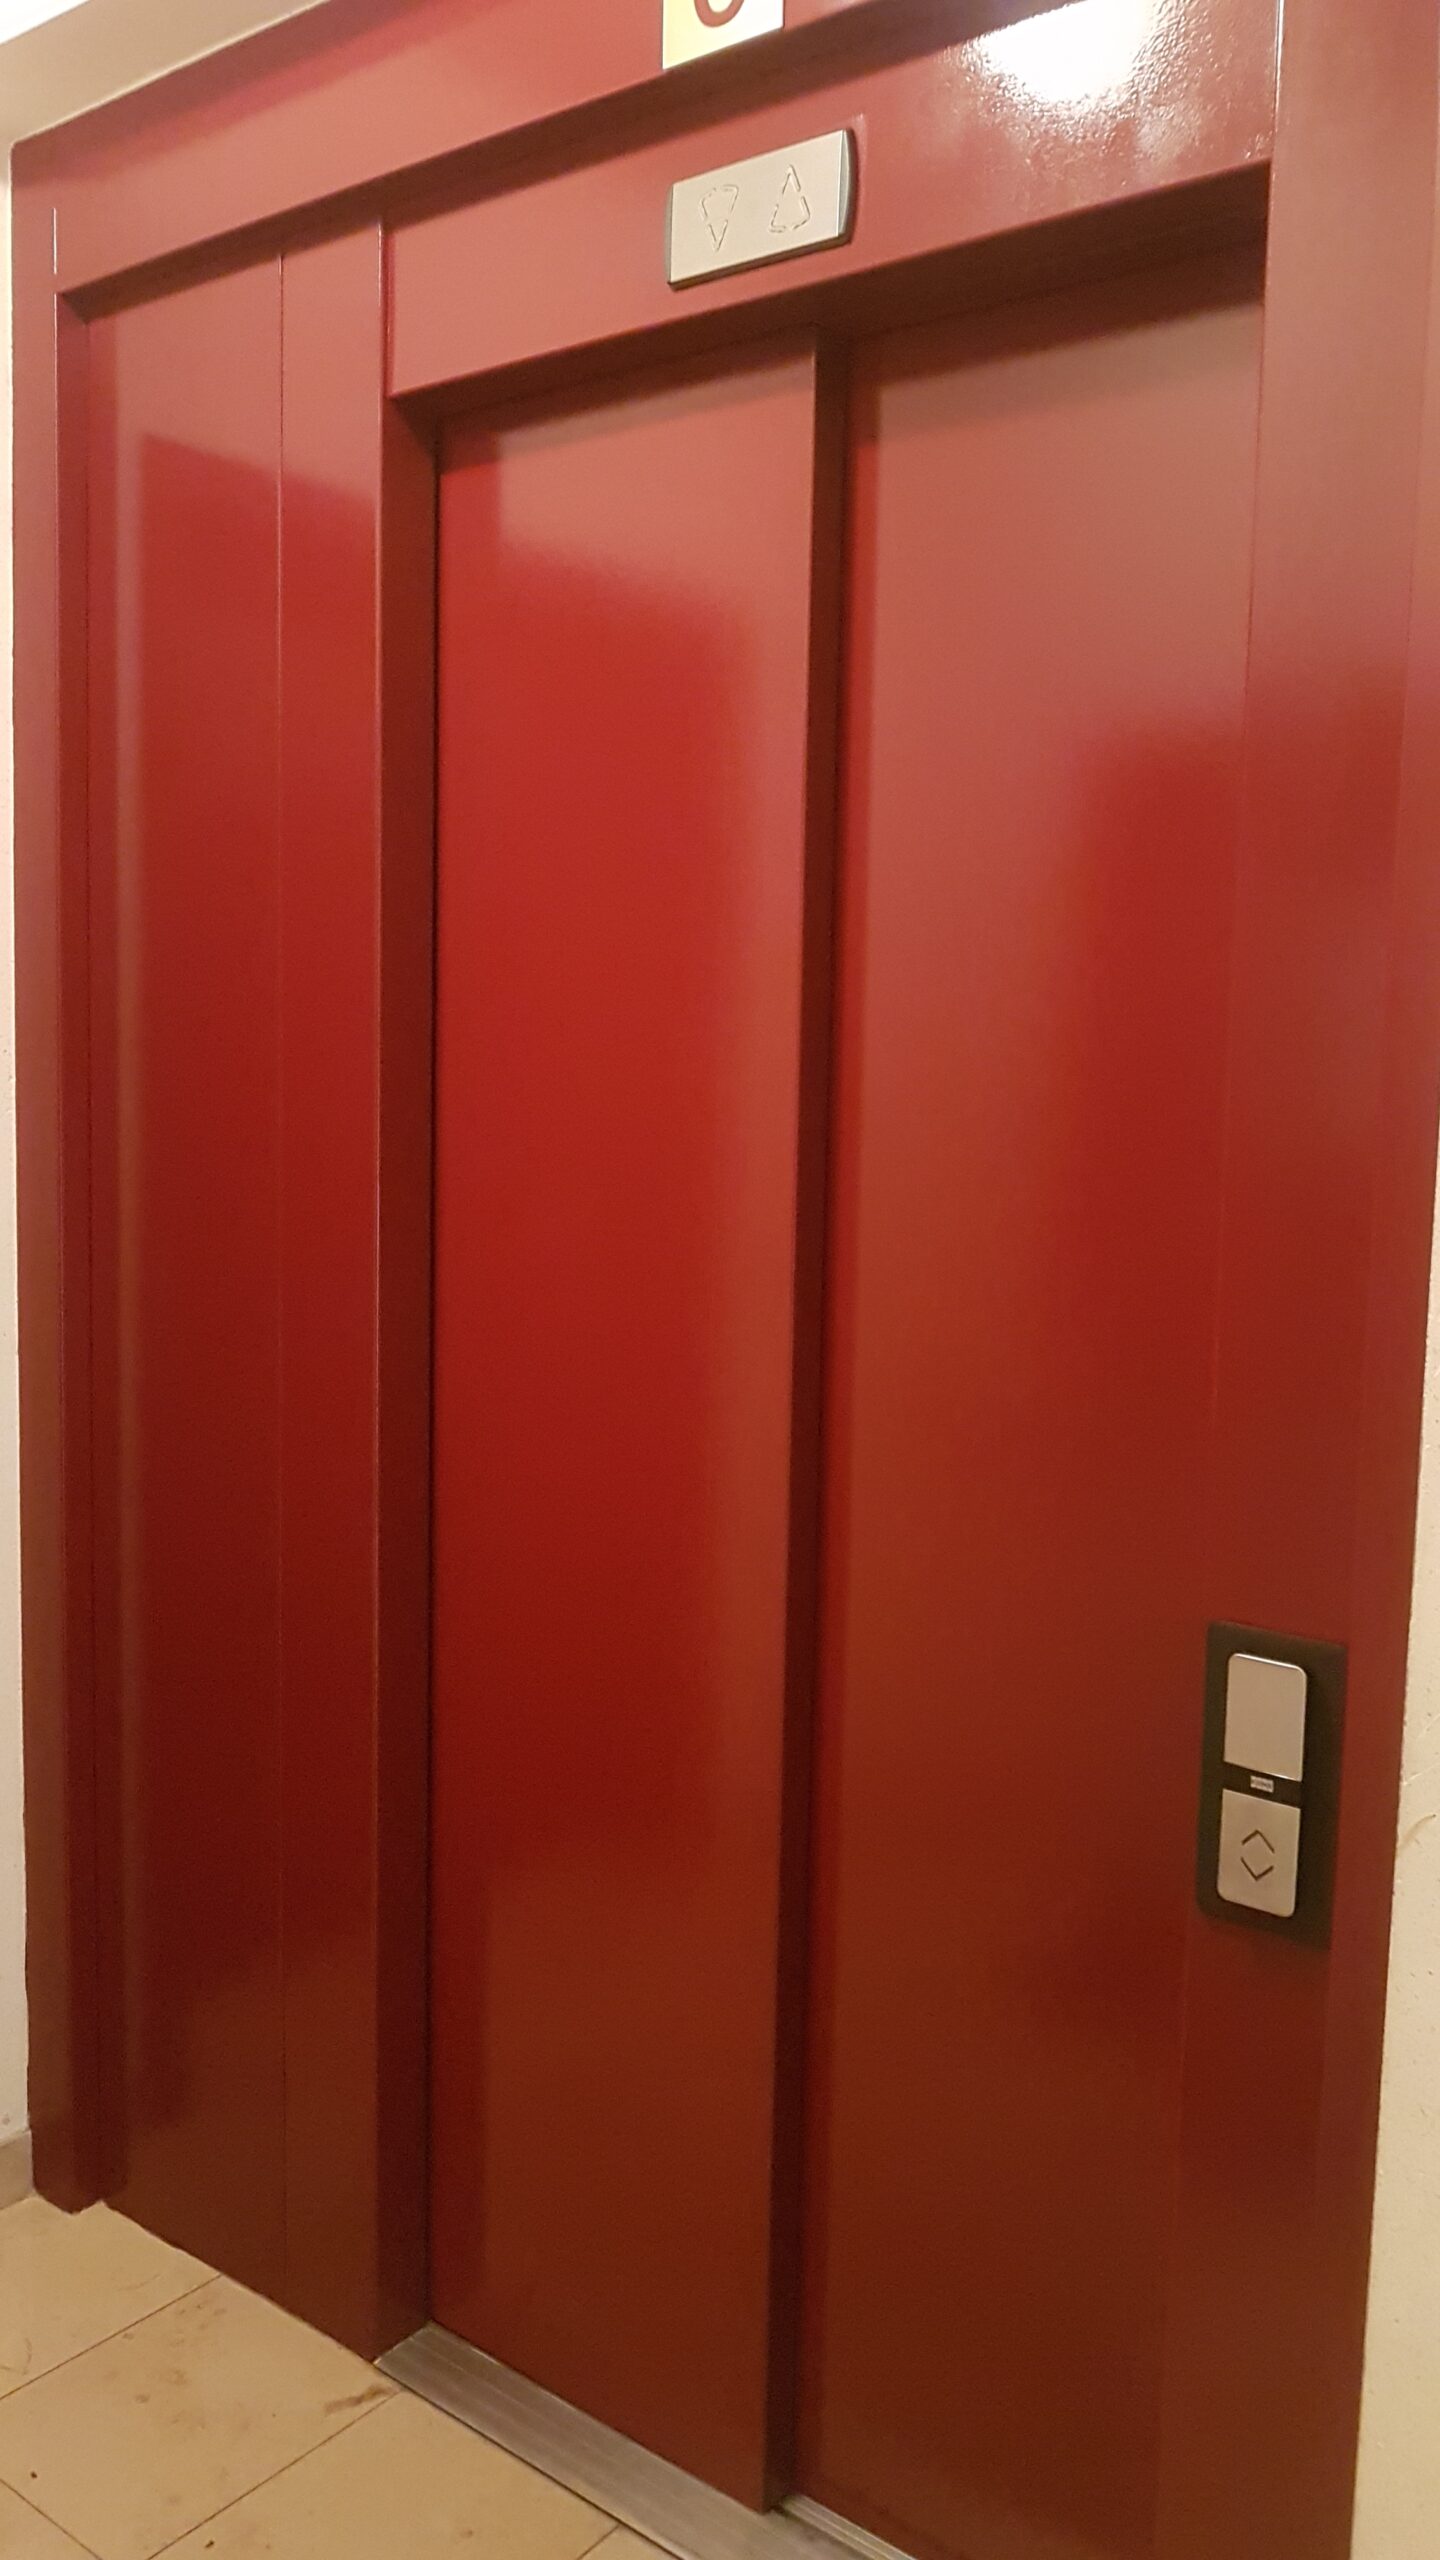 You are currently viewing Mise en peinture des portes d’ascenseur à Waremme.